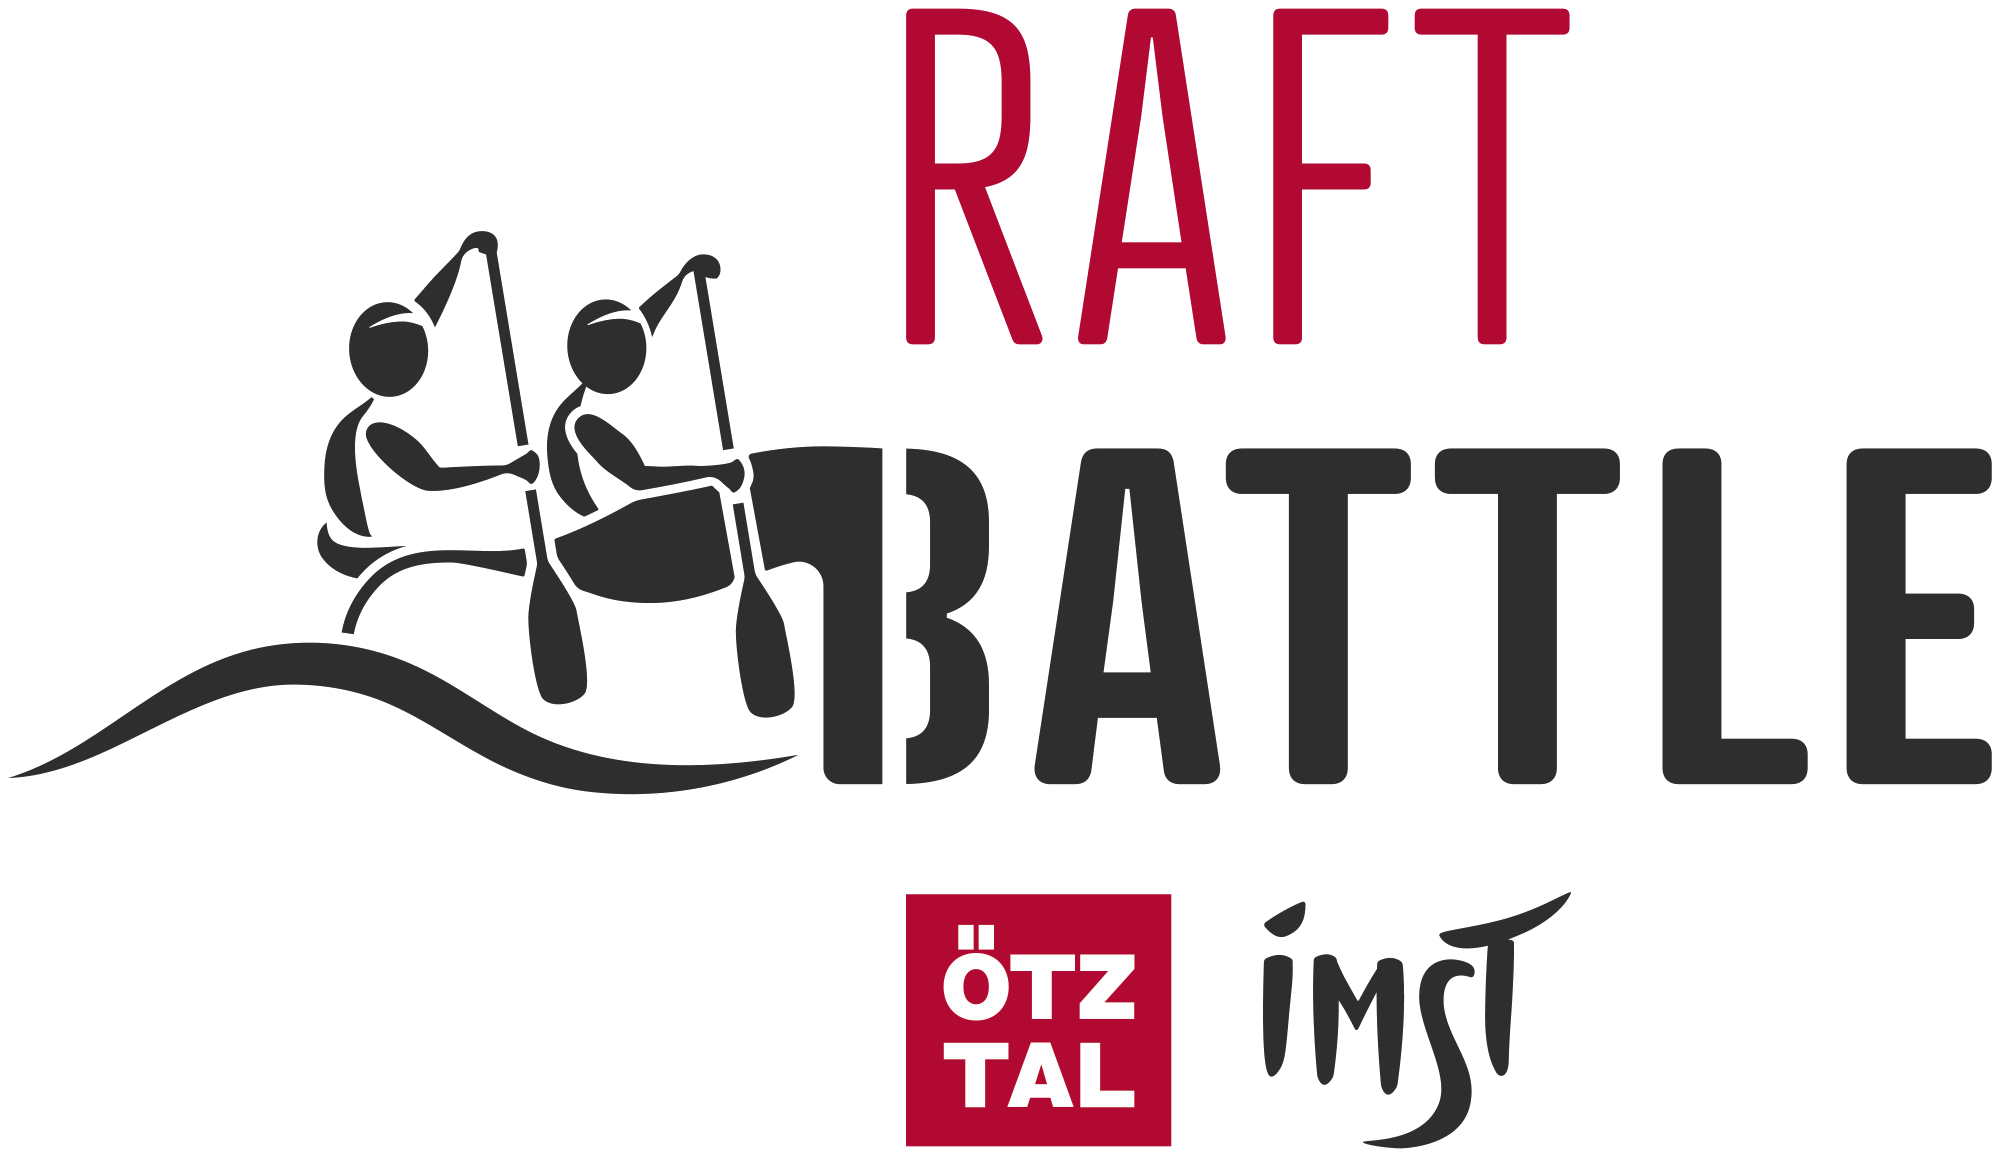 Raftbattle